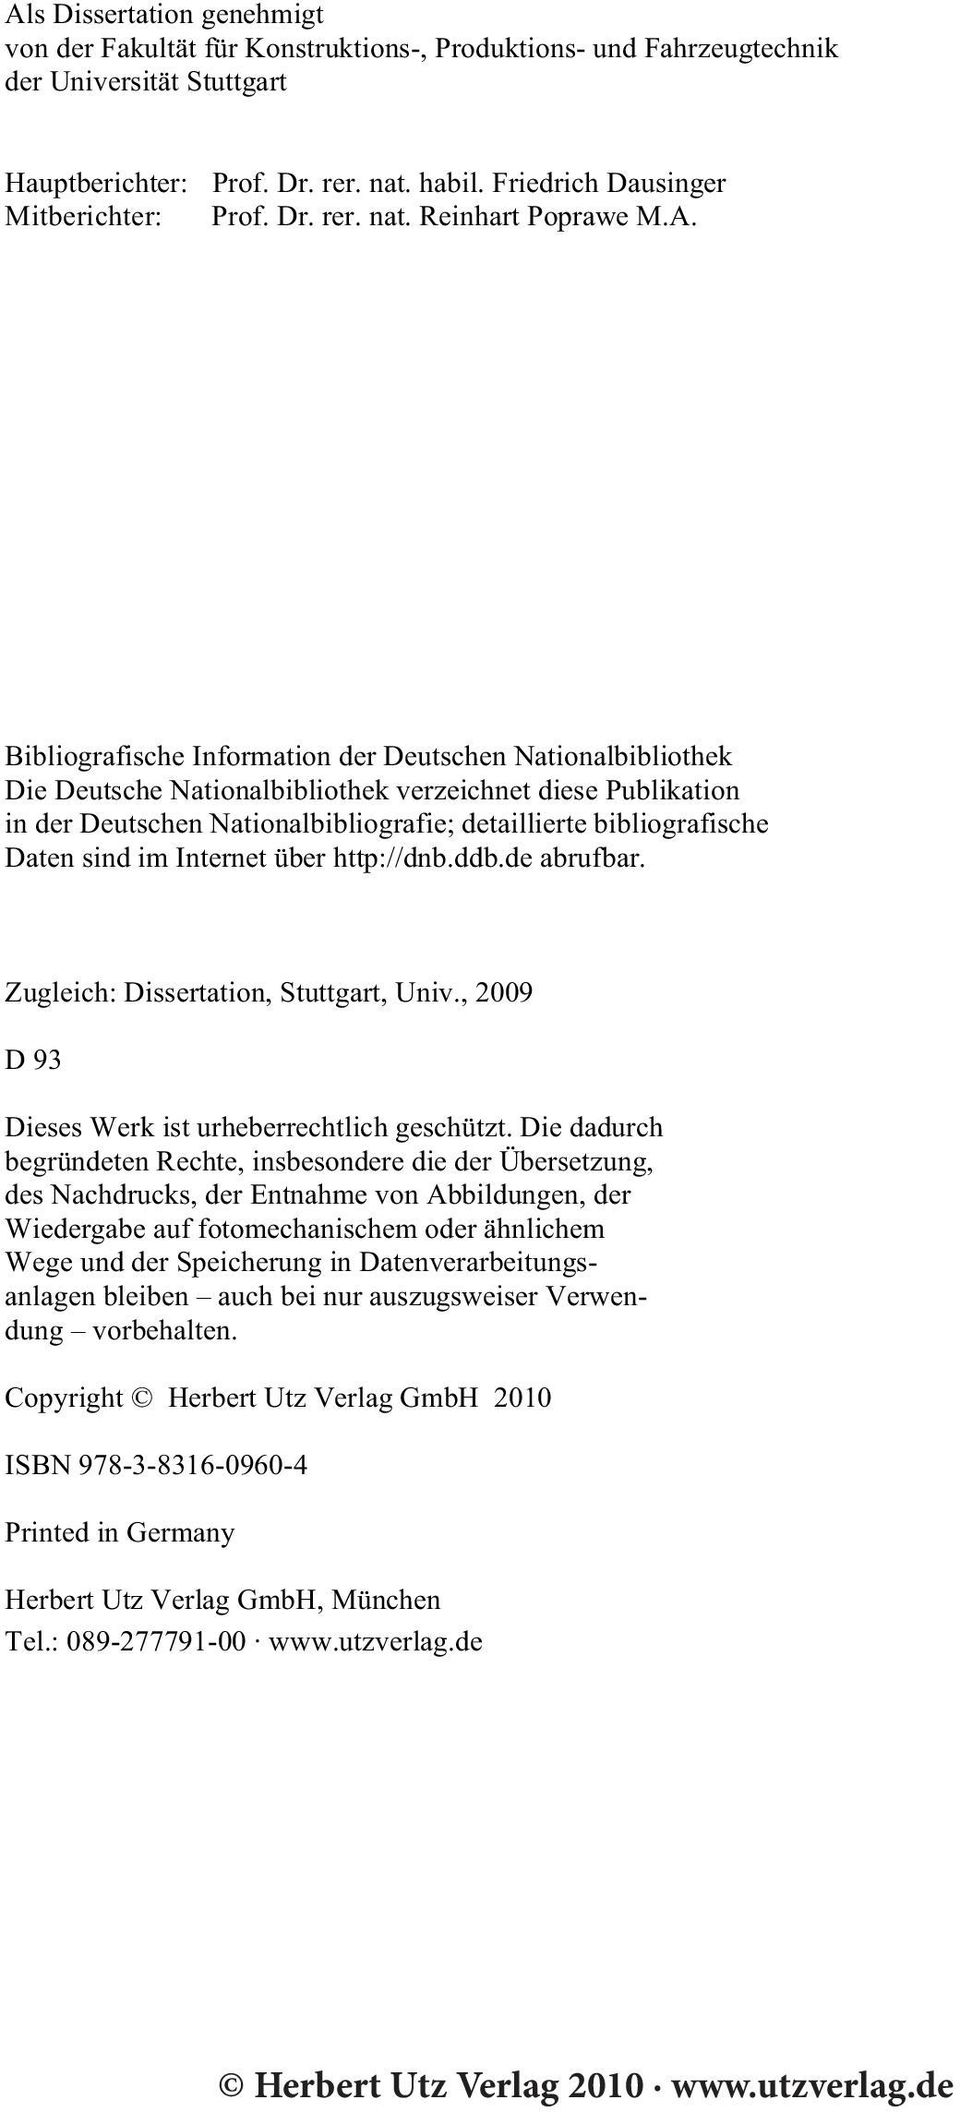 Bibliografische Information der Deutschen Nationalbibliothek Die Deutsche Nationalbibliothek verzeichnet diese Publikation in der Deutschen Nationalbibliografie; detaillierte bibliografische Daten